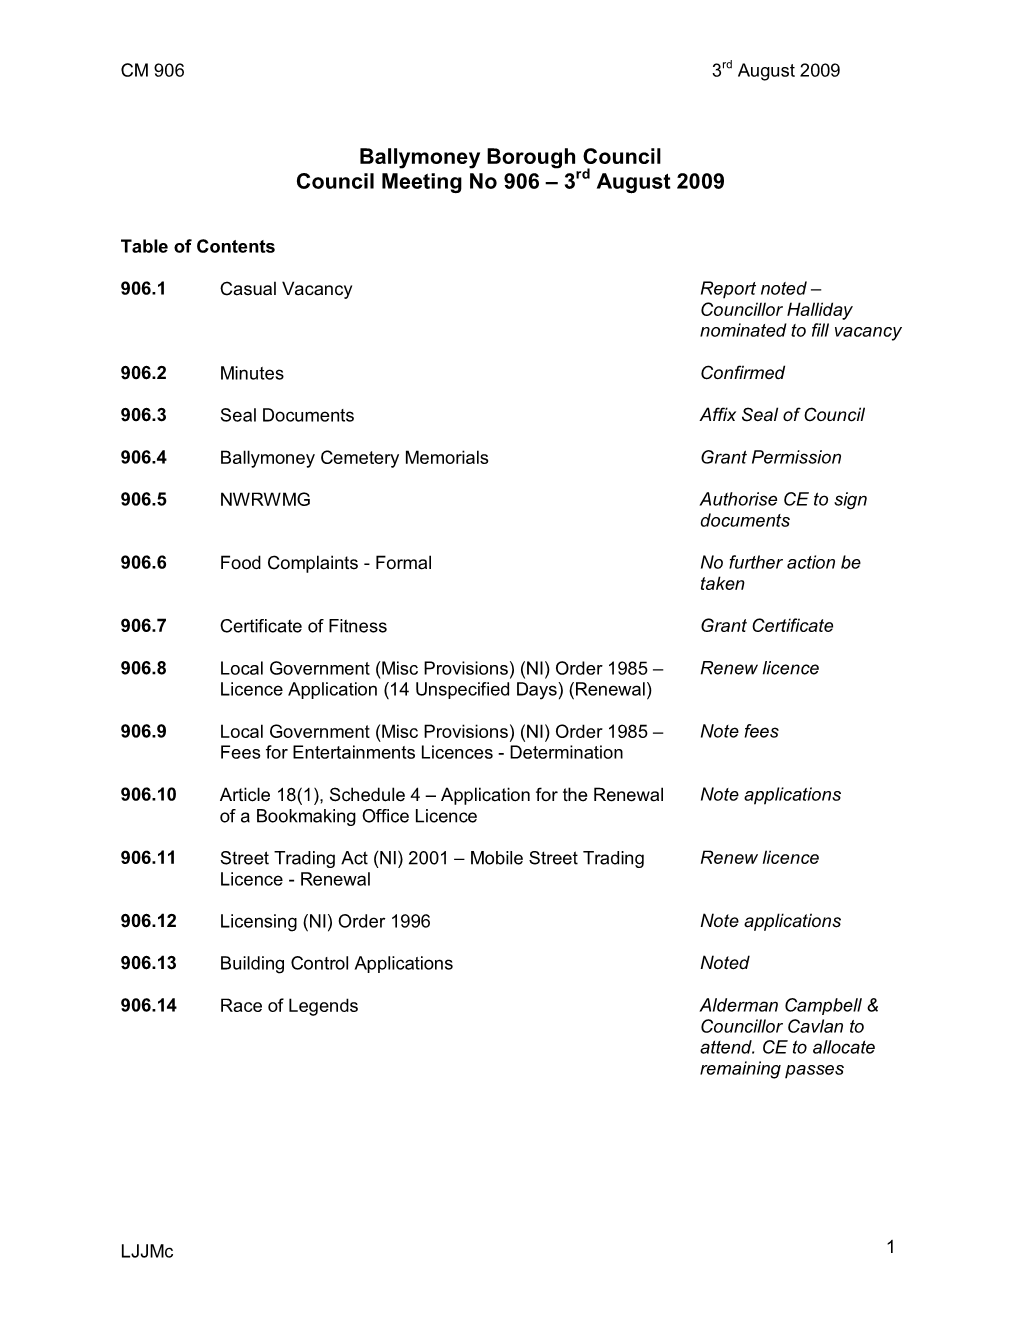 Ballymoney Borough Council Council Meeting No 906 – 3 August 2009